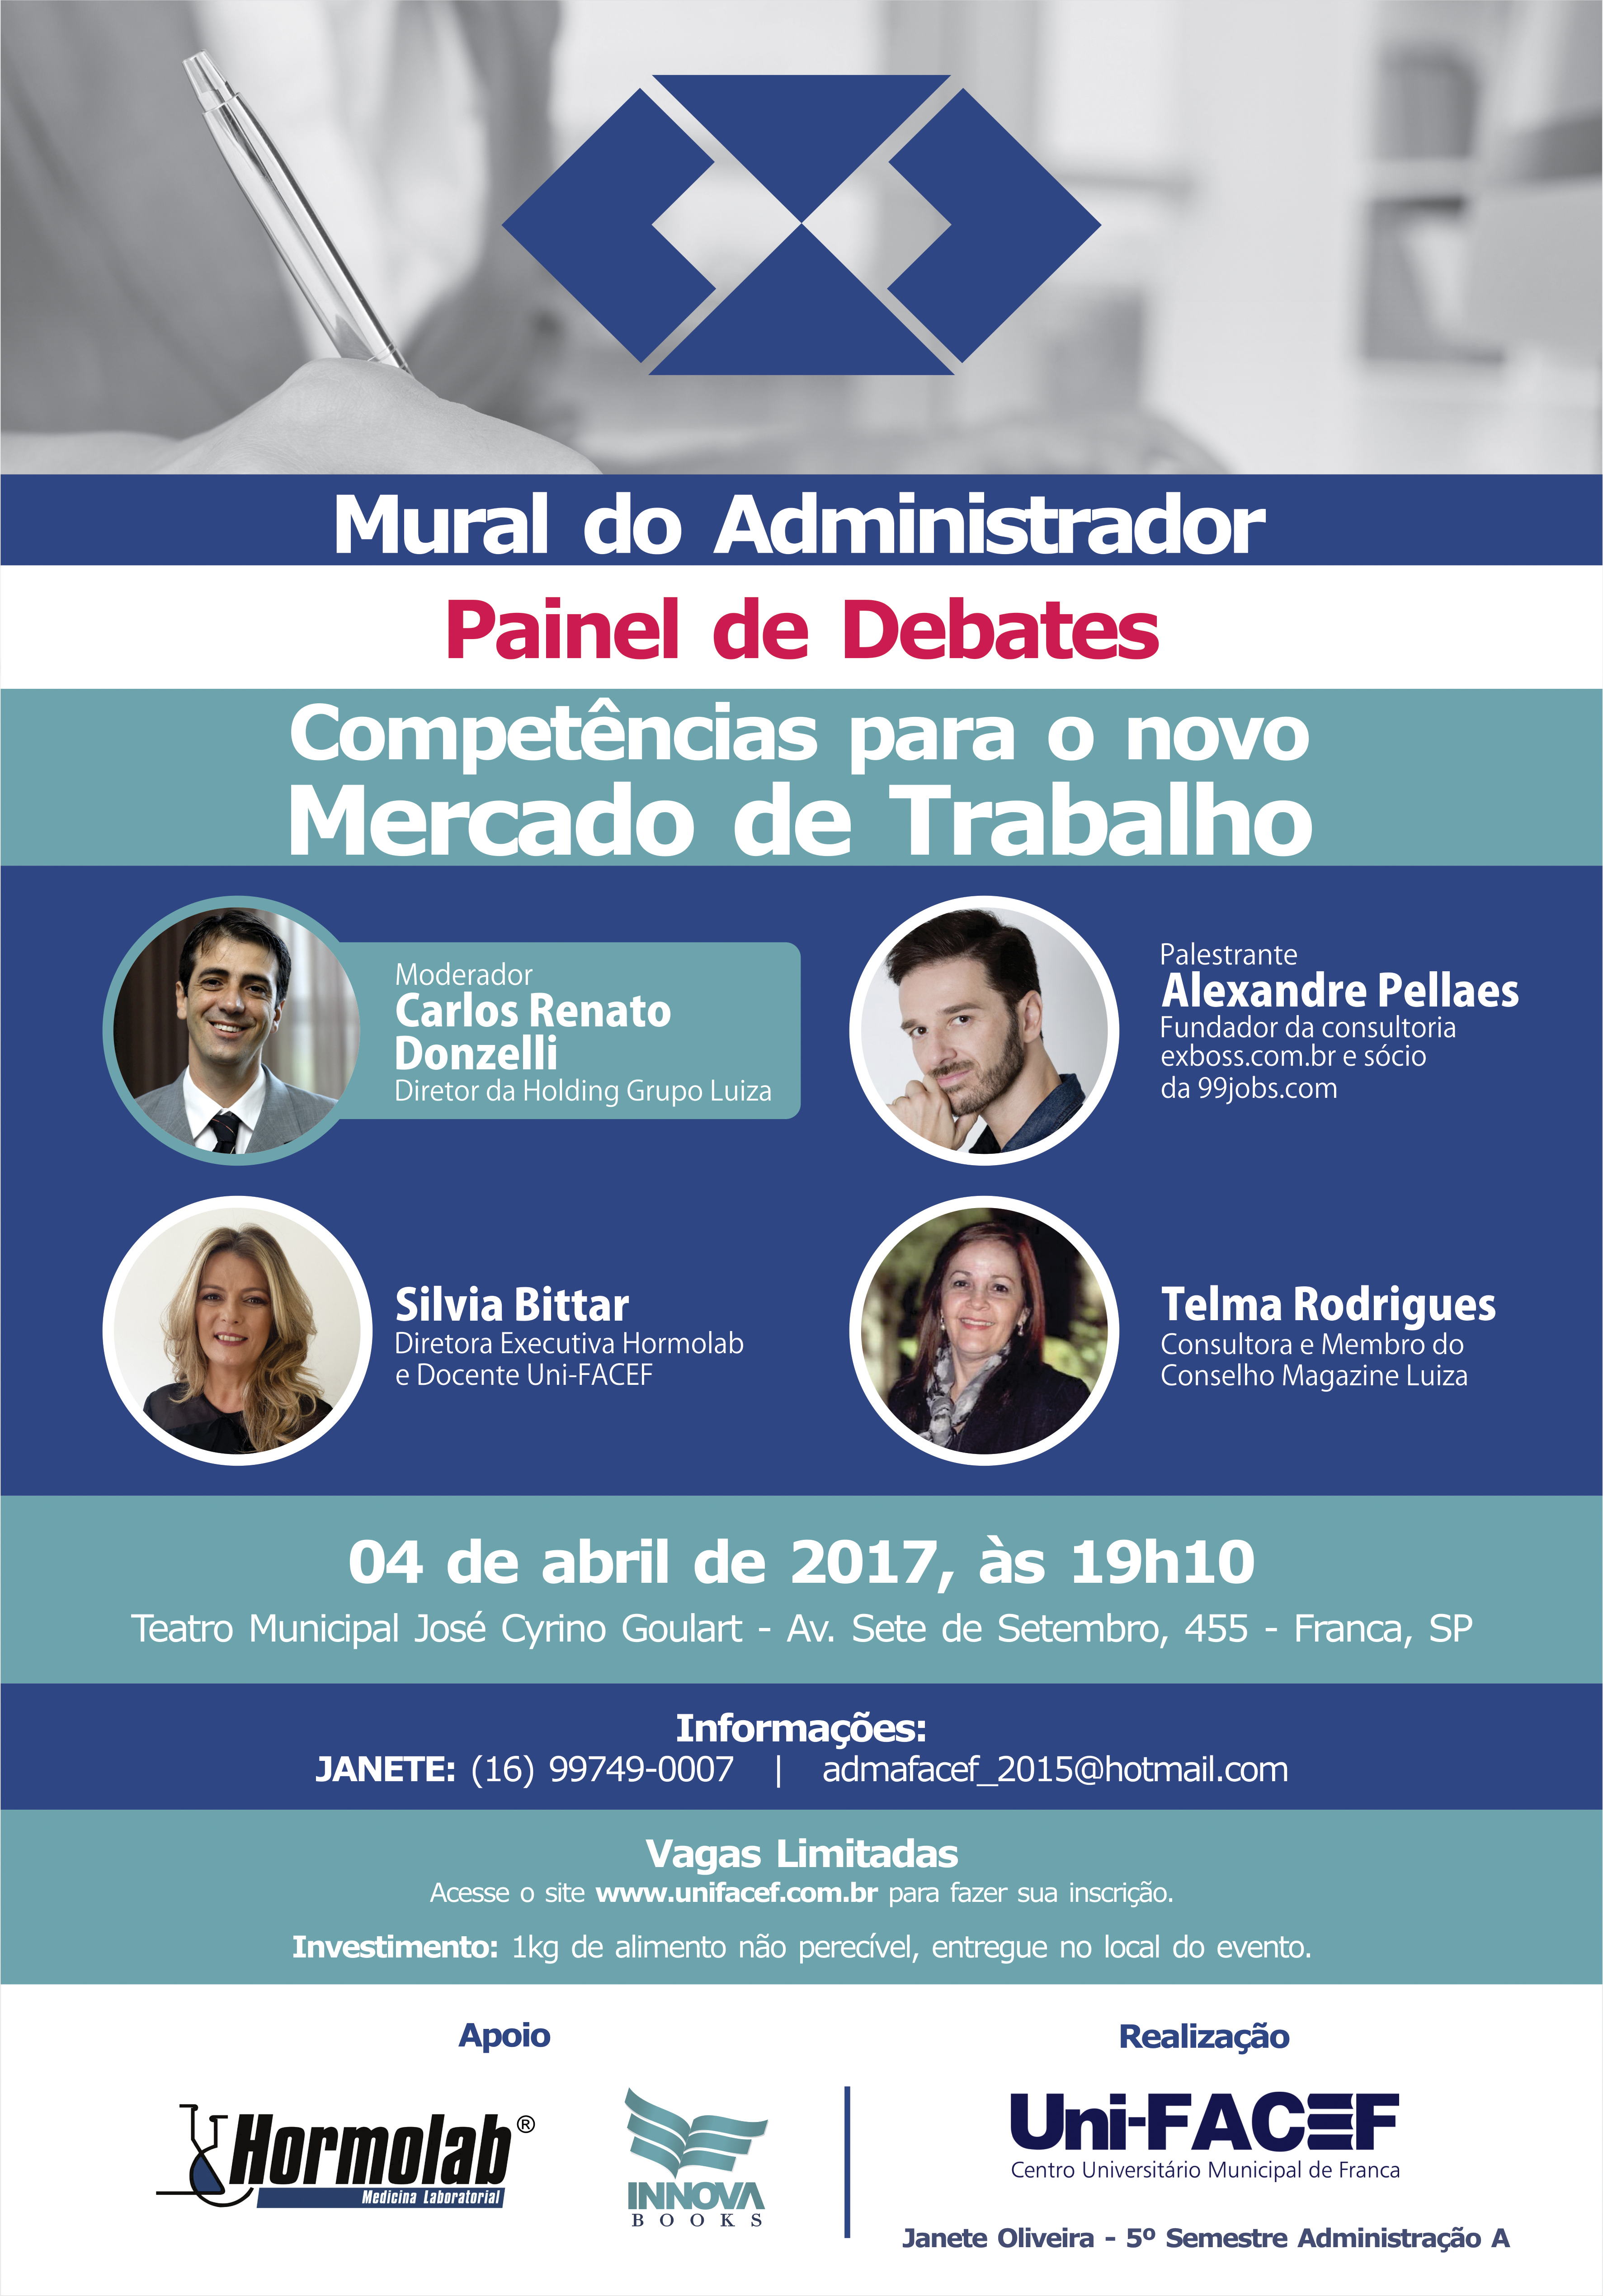 Painel de debates organizado por estudantes de Administração – participe